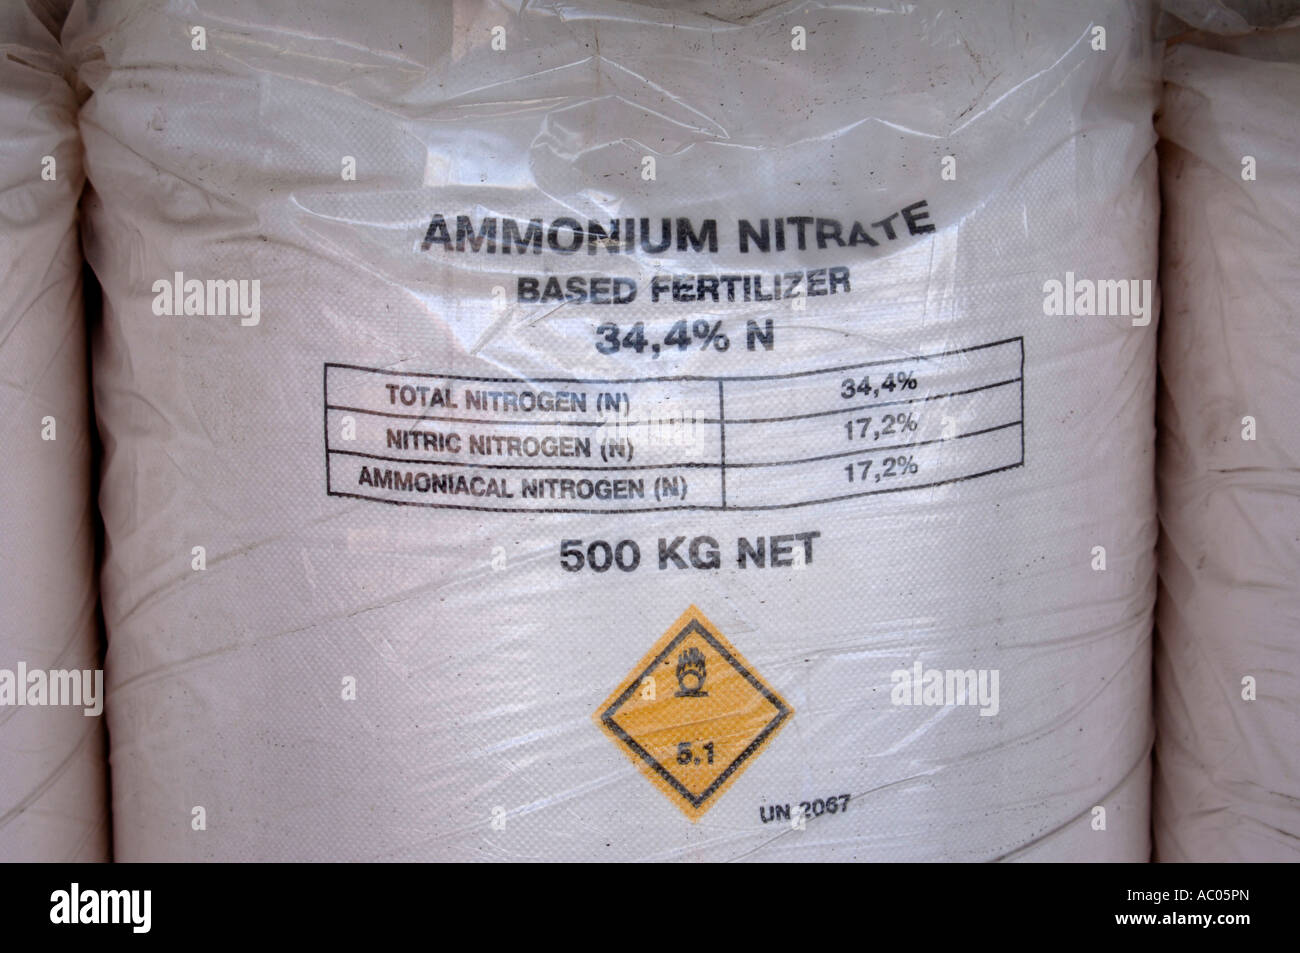 Una bolsa de tamaño industrial de nitrato de amonio fertilizante agrícola QUE PUEDEN UTILIZARSE EN DISPOSITIVOS EXPLOSIVOS IMPROVISADOS UK Foto de stock